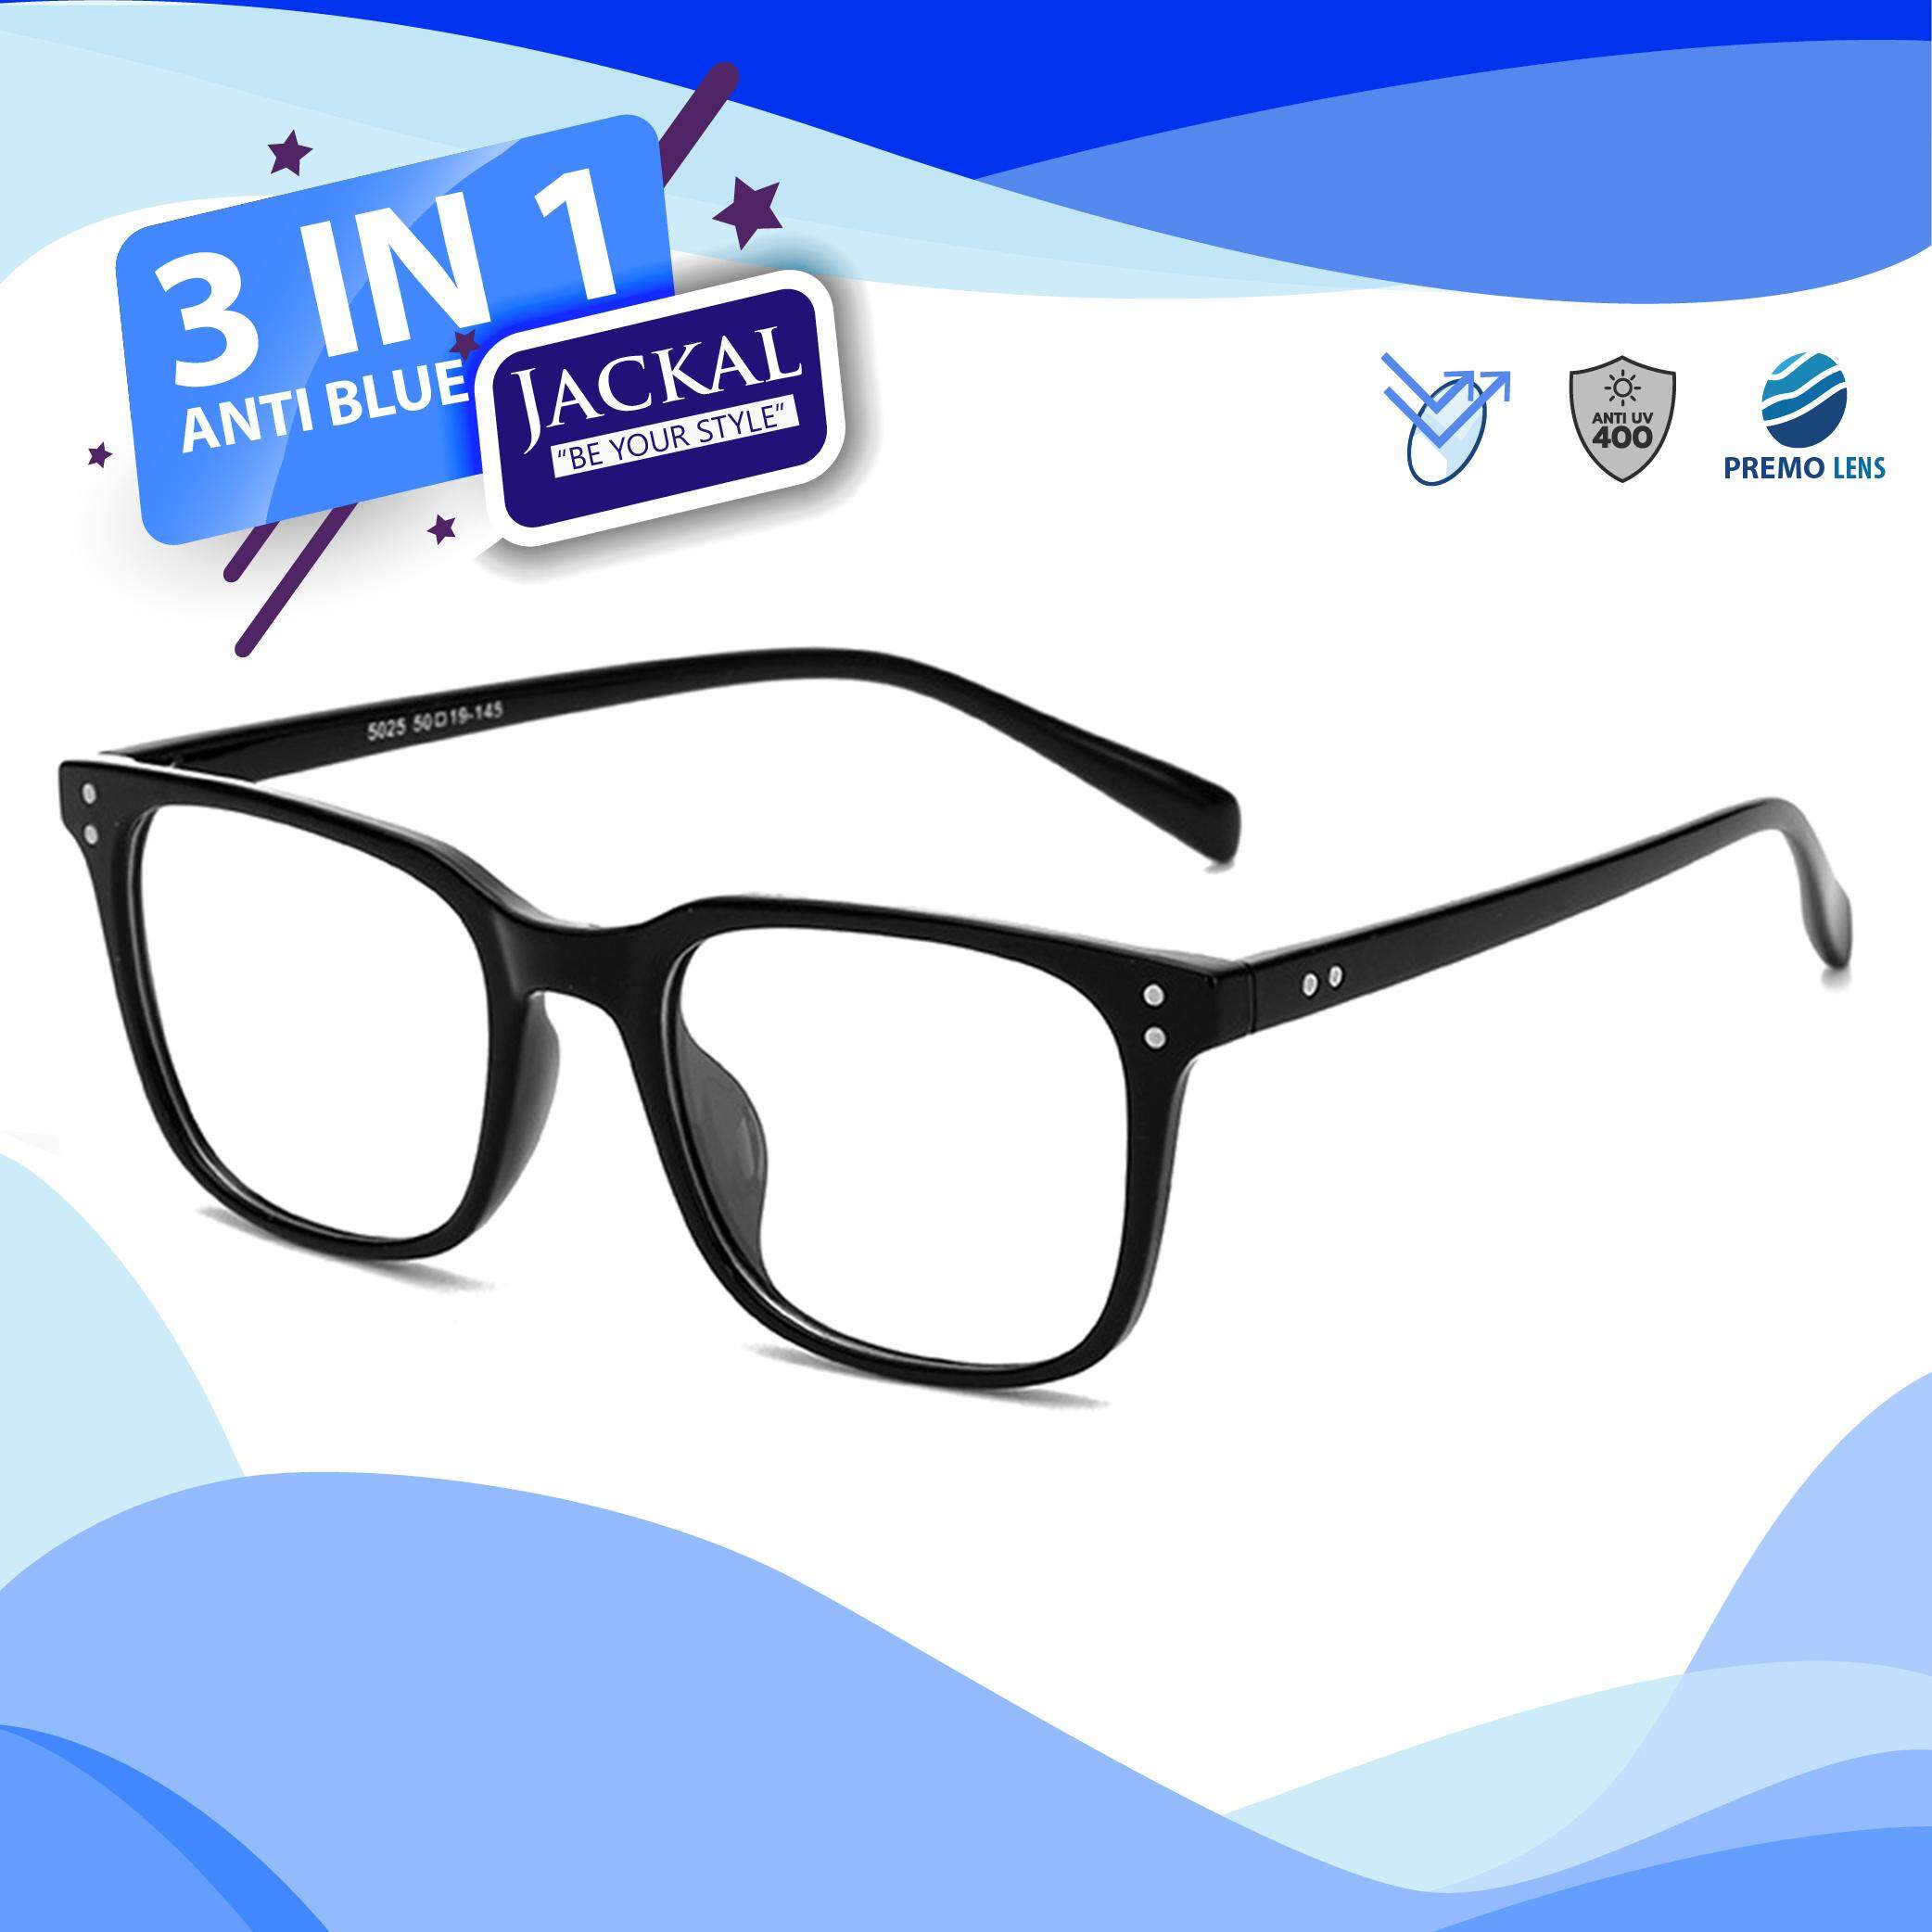 JACKAL แว่นกรองแสงสีฟ้า รุ่น OP011BLB (TR90) - PREMO Lens เคลือบมัลติโค้ด สุดยอดเทคโนโลยีเลนส์ใหม่จากญี่ปุ่น